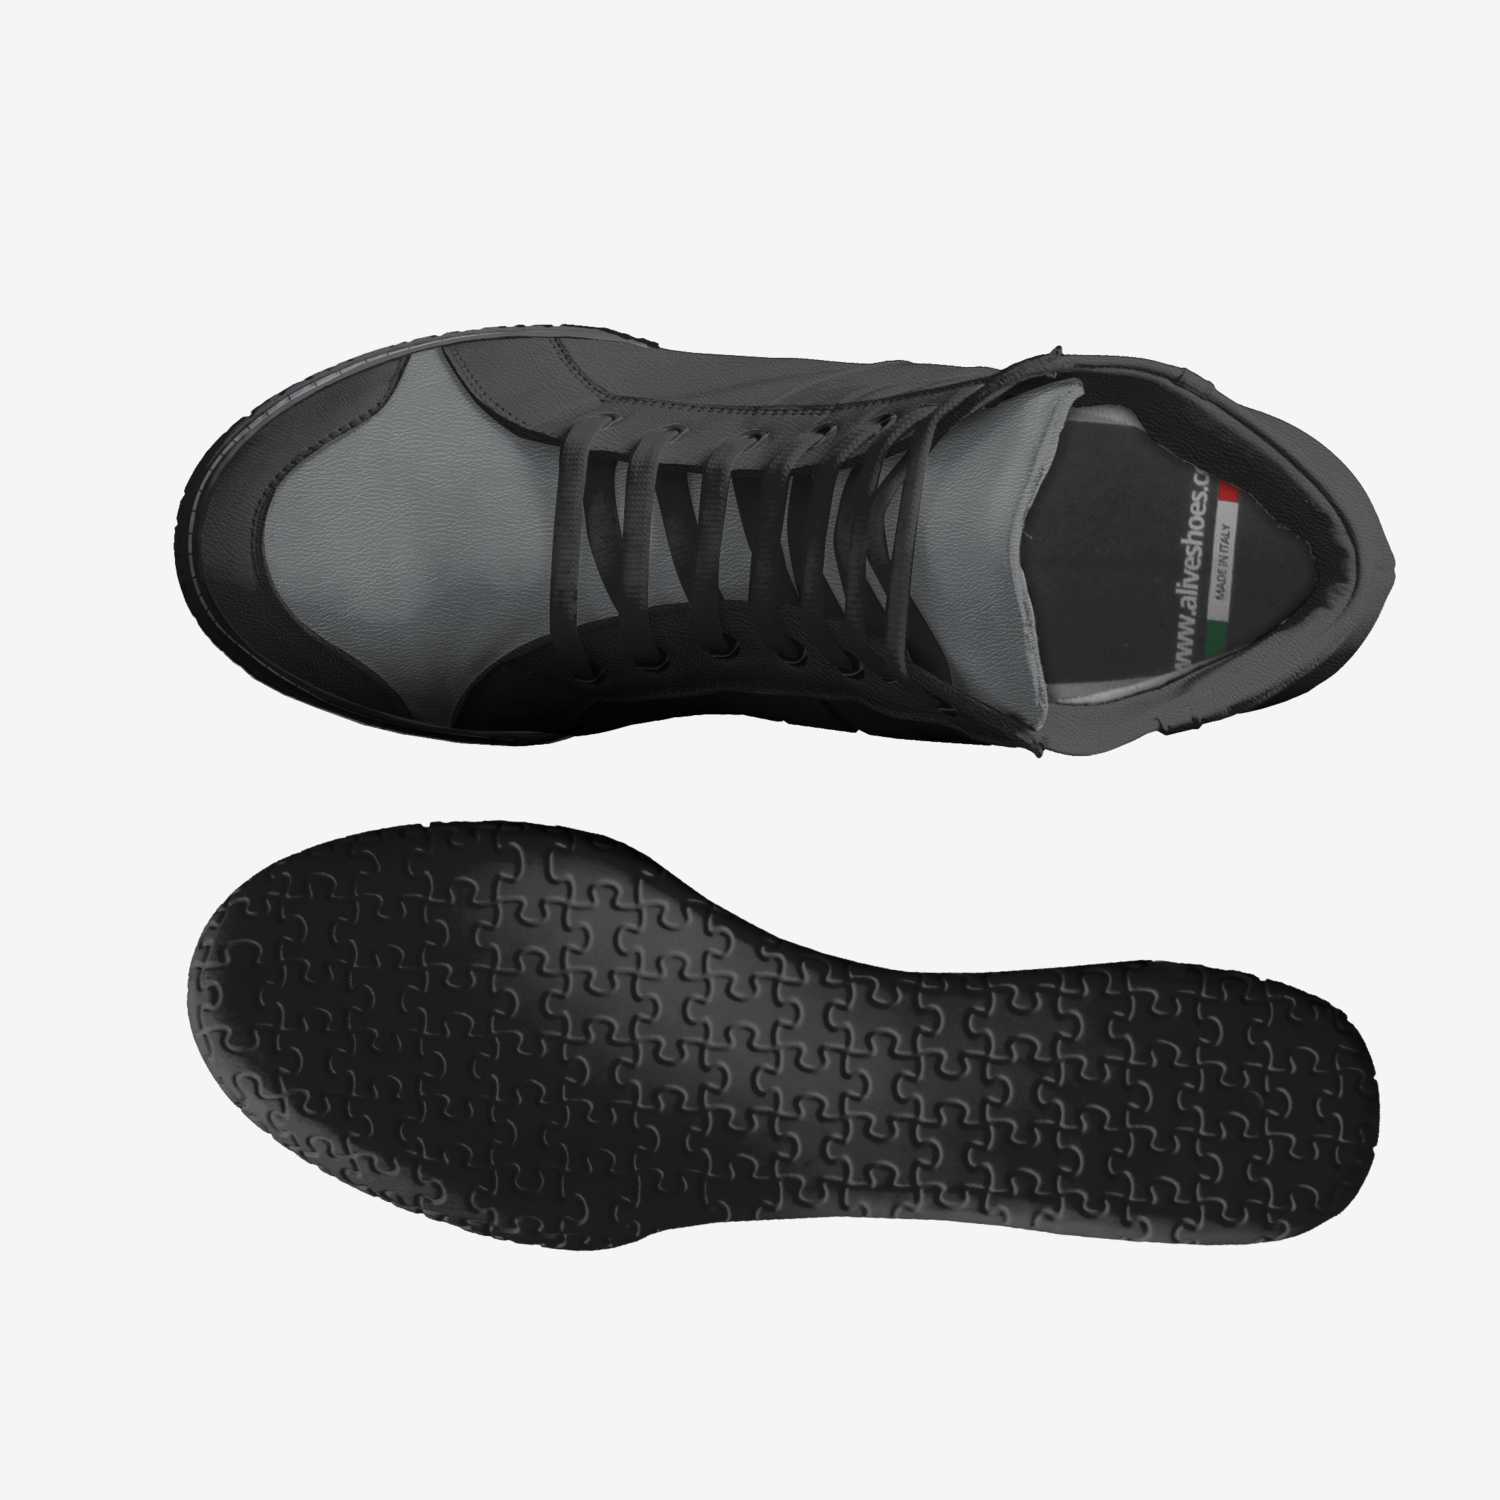 Mudare | A Custom Shoe concept by Mudare V.